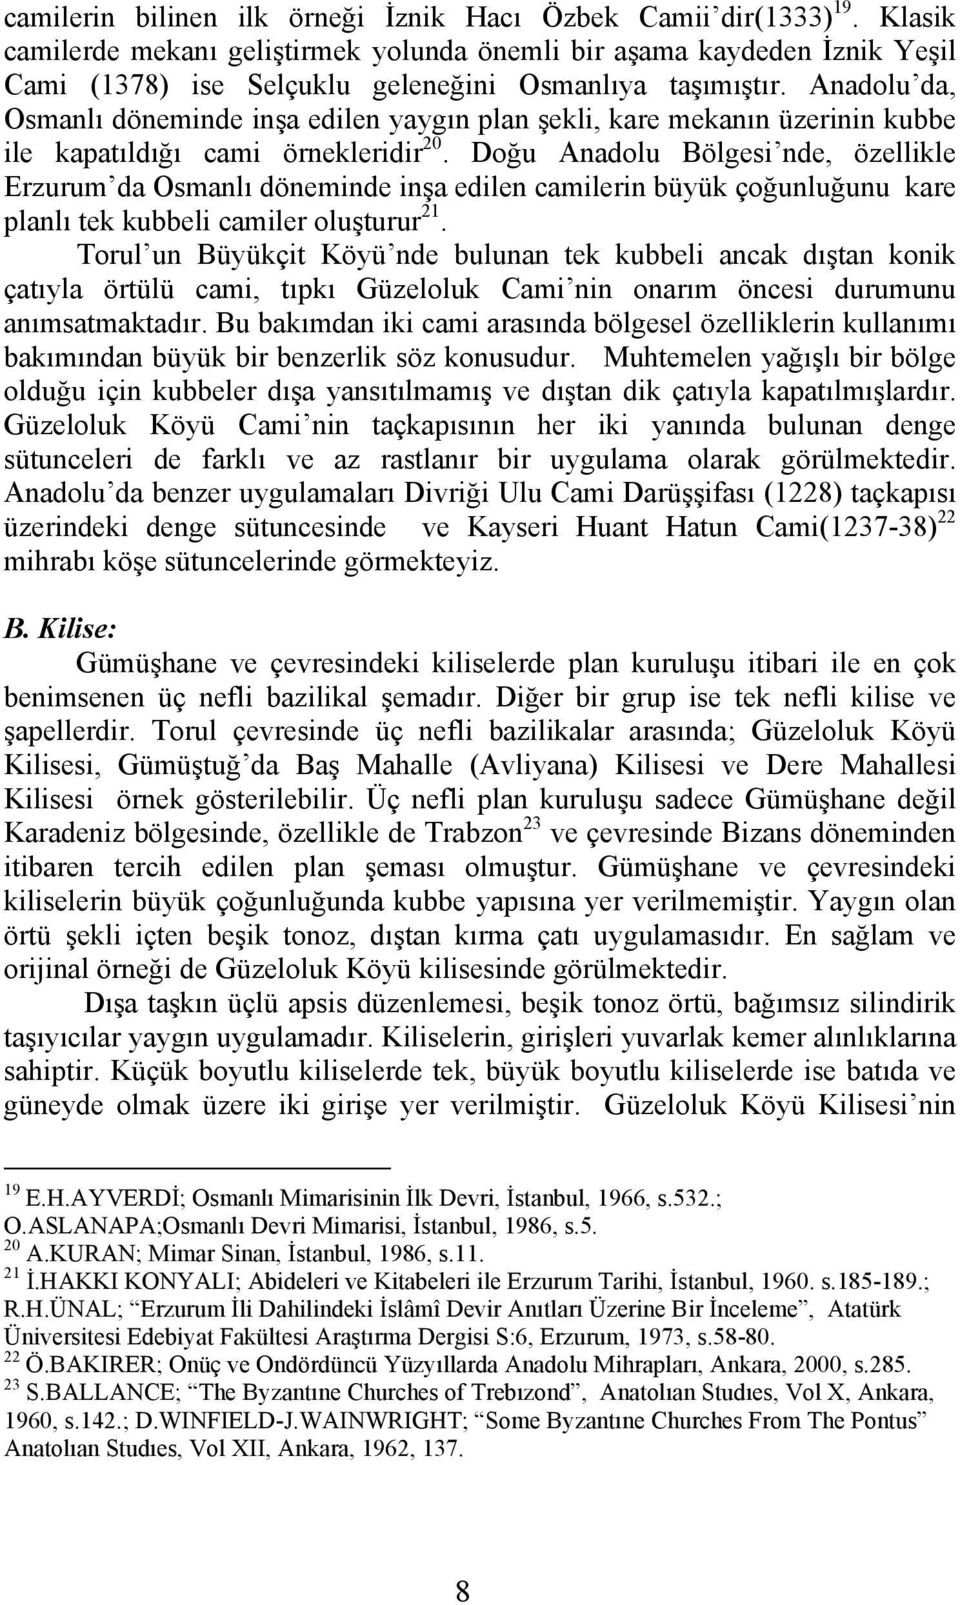 Anadolu da, Osmanlı döneminde inşa edilen yaygın plan şekli, kare mekanın üzerinin kubbe ile kapatıldığı cami örnekleridir 20.